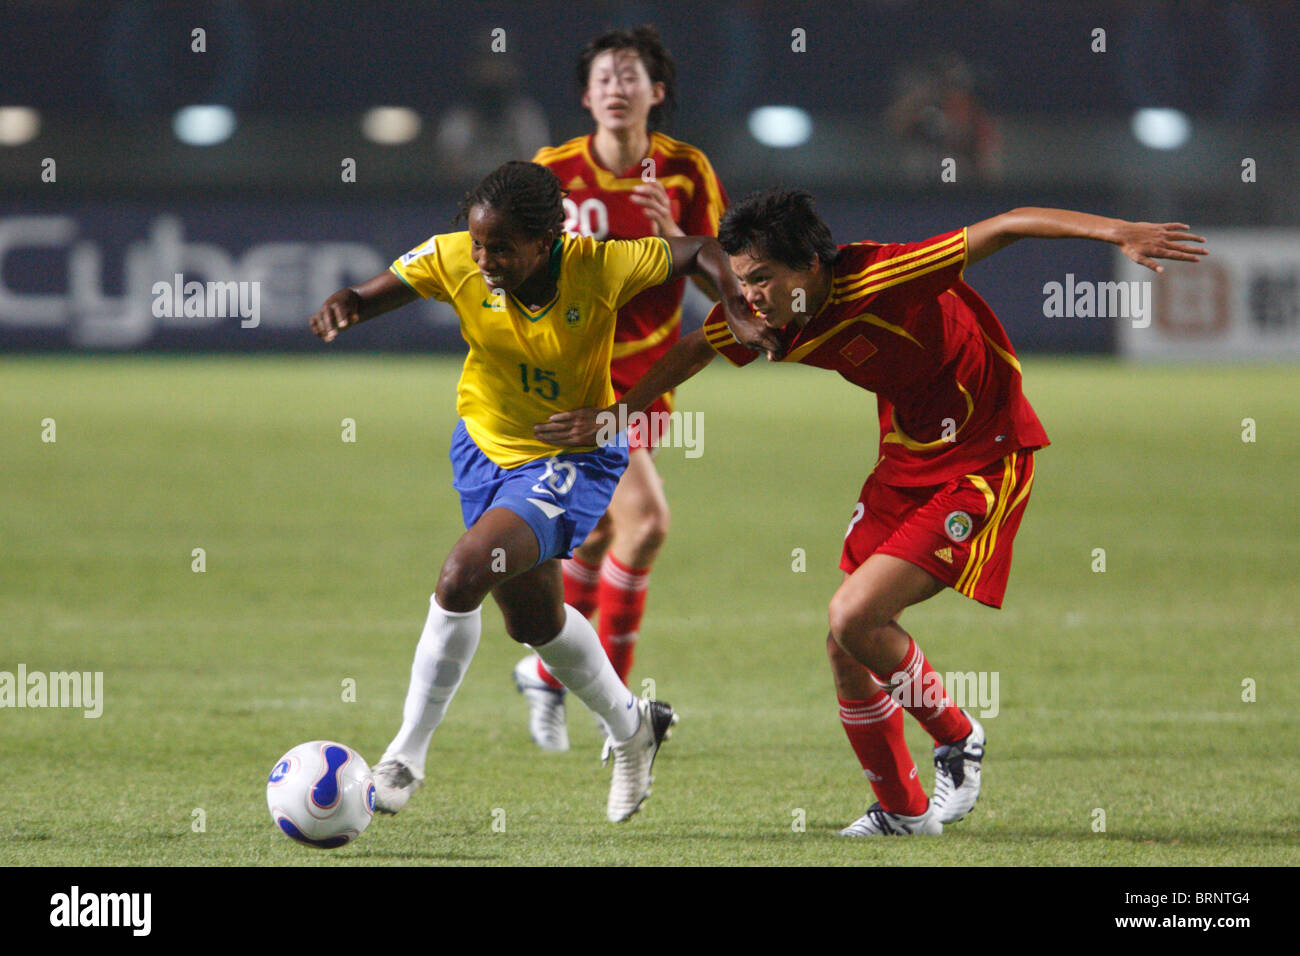 Katia del Brasile (L) comanda la sfera contro Li Jie della Cina (r) durante un 2007 Coppa del Mondo Donne partita di calcio. Foto Stock